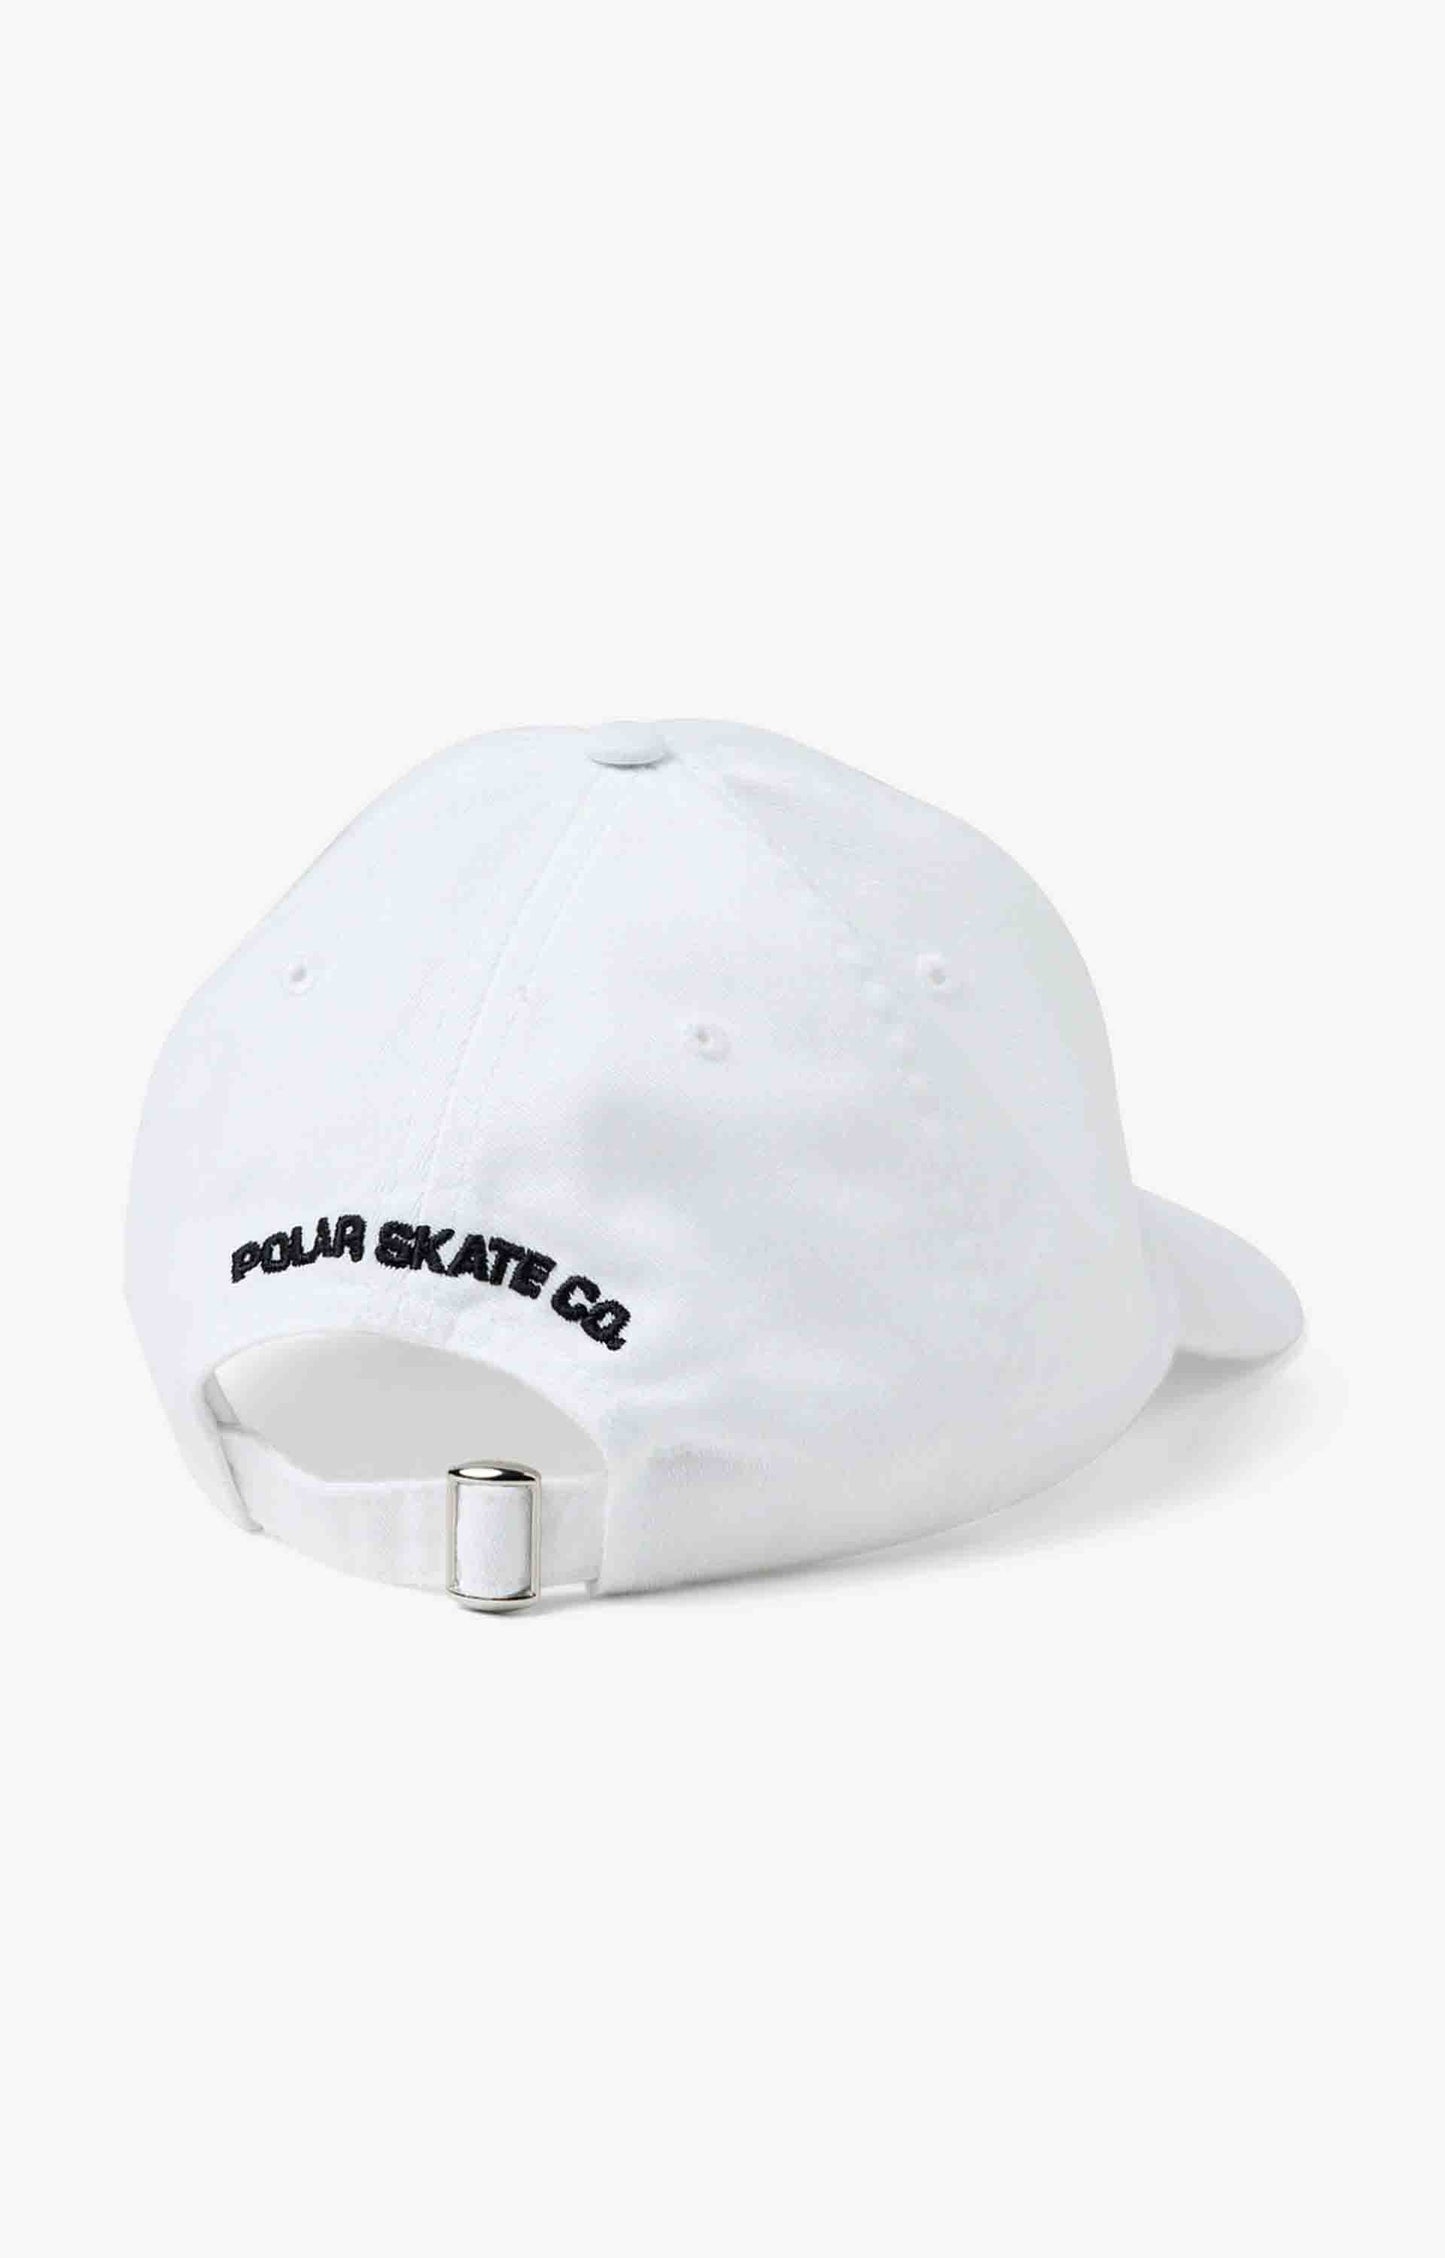 Polar Skate Co Skate Dude Cap Headwear, White